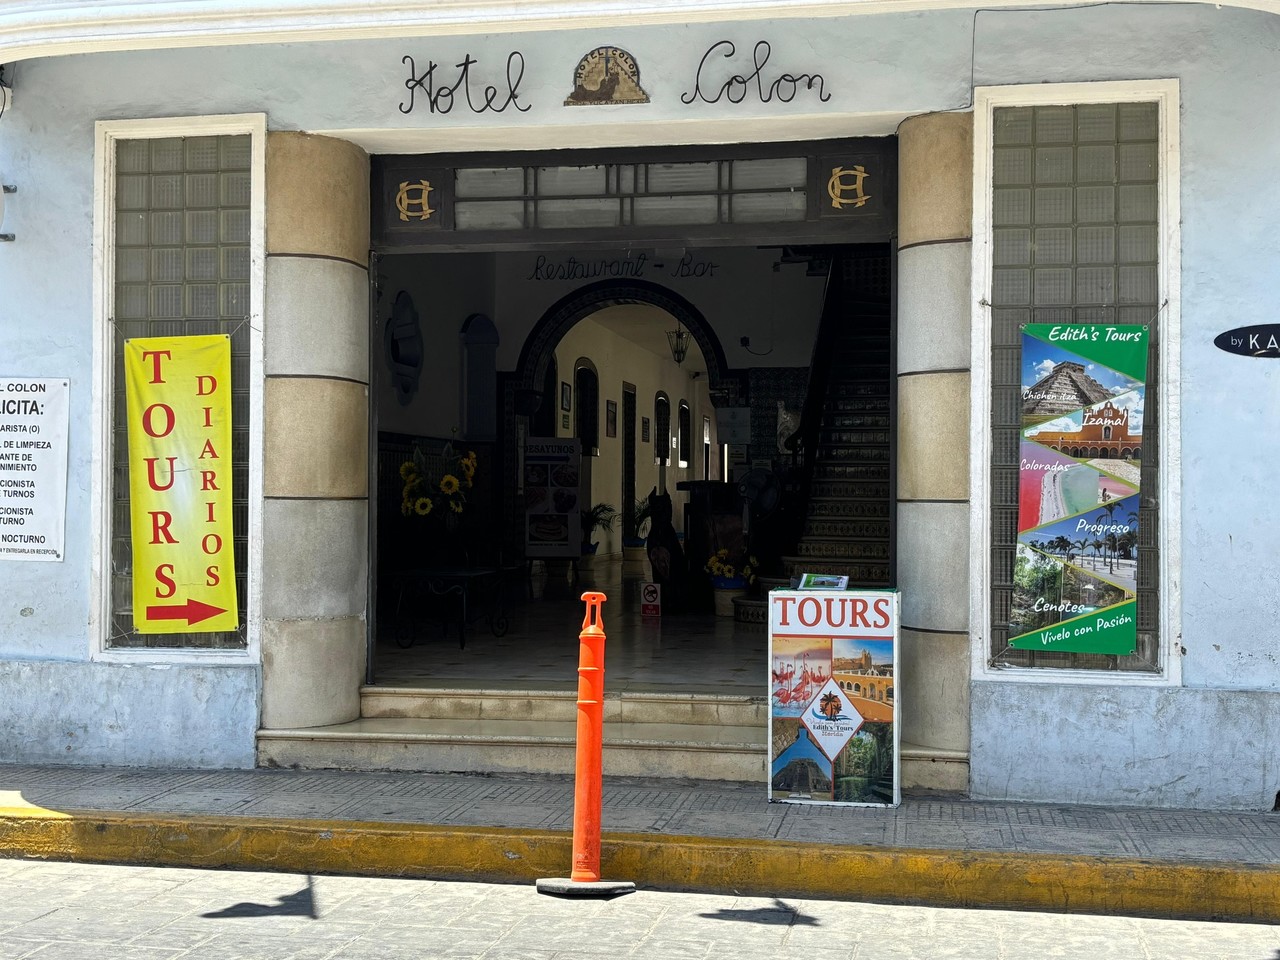 Venta de tours guiados en el centro de Mérida. Foto: Alejandra Vargas